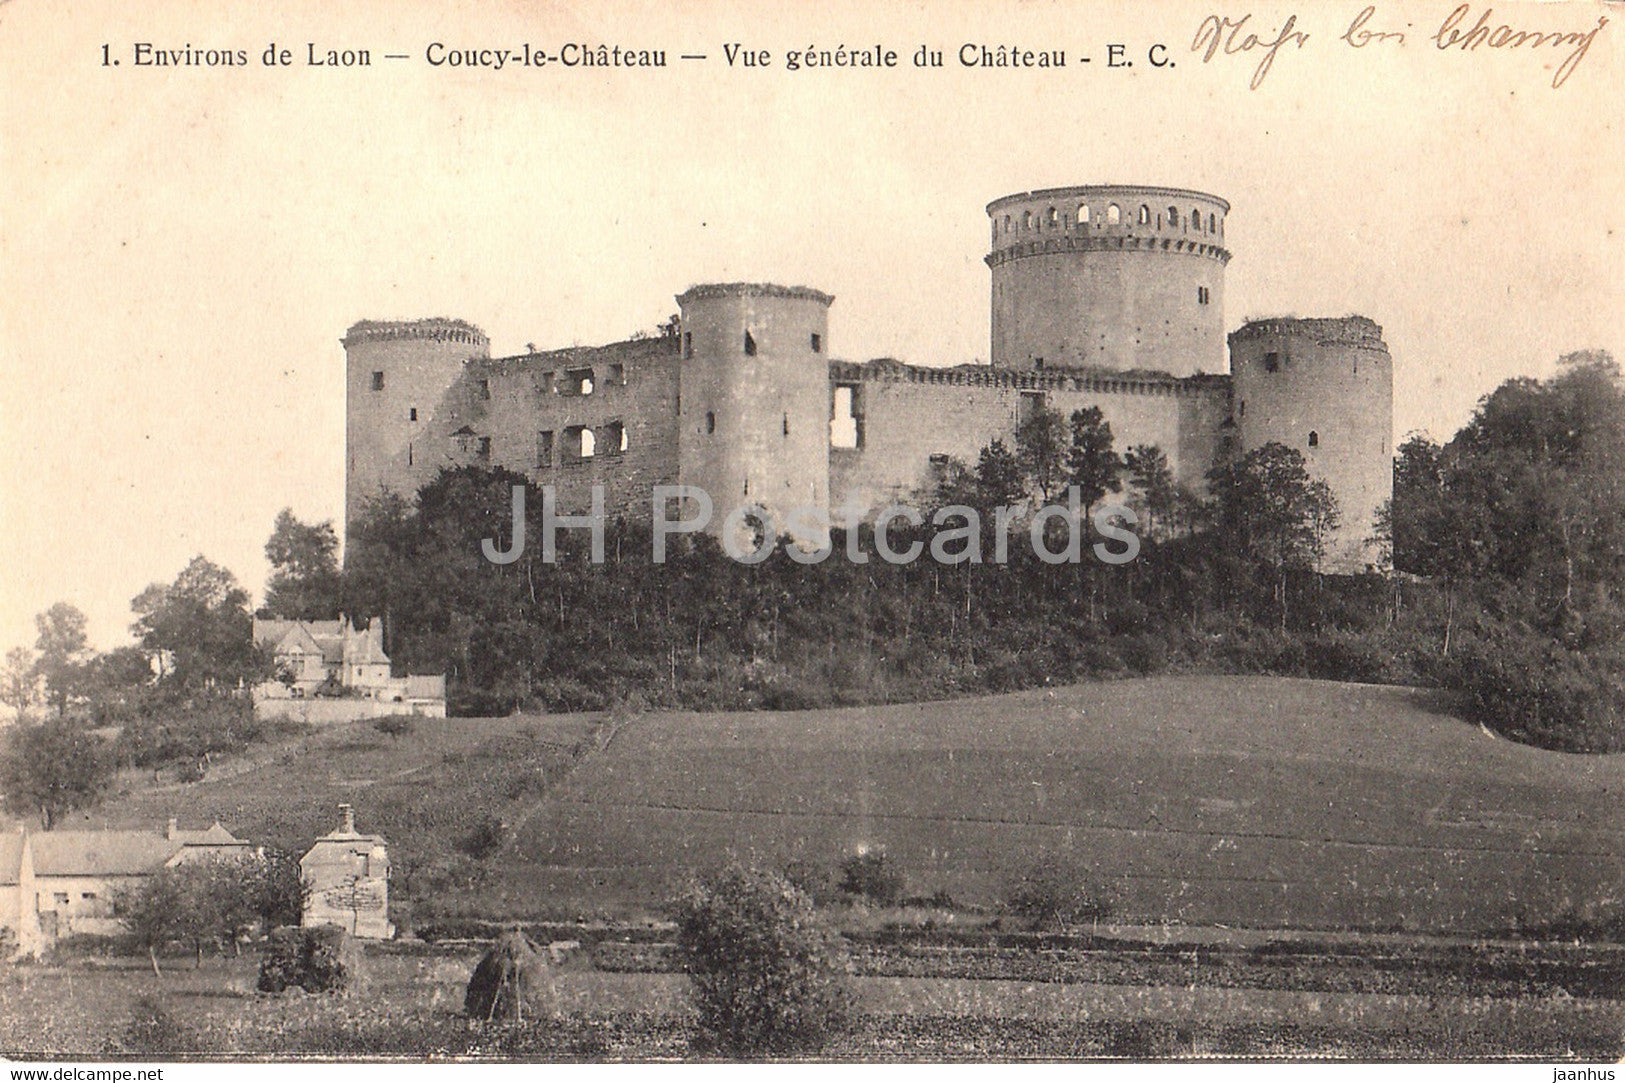 Environs de Laon - Coucy le Chateau - Vue Generale du Chateau - castle - 1 - old postcard - France - used - JH Postcards